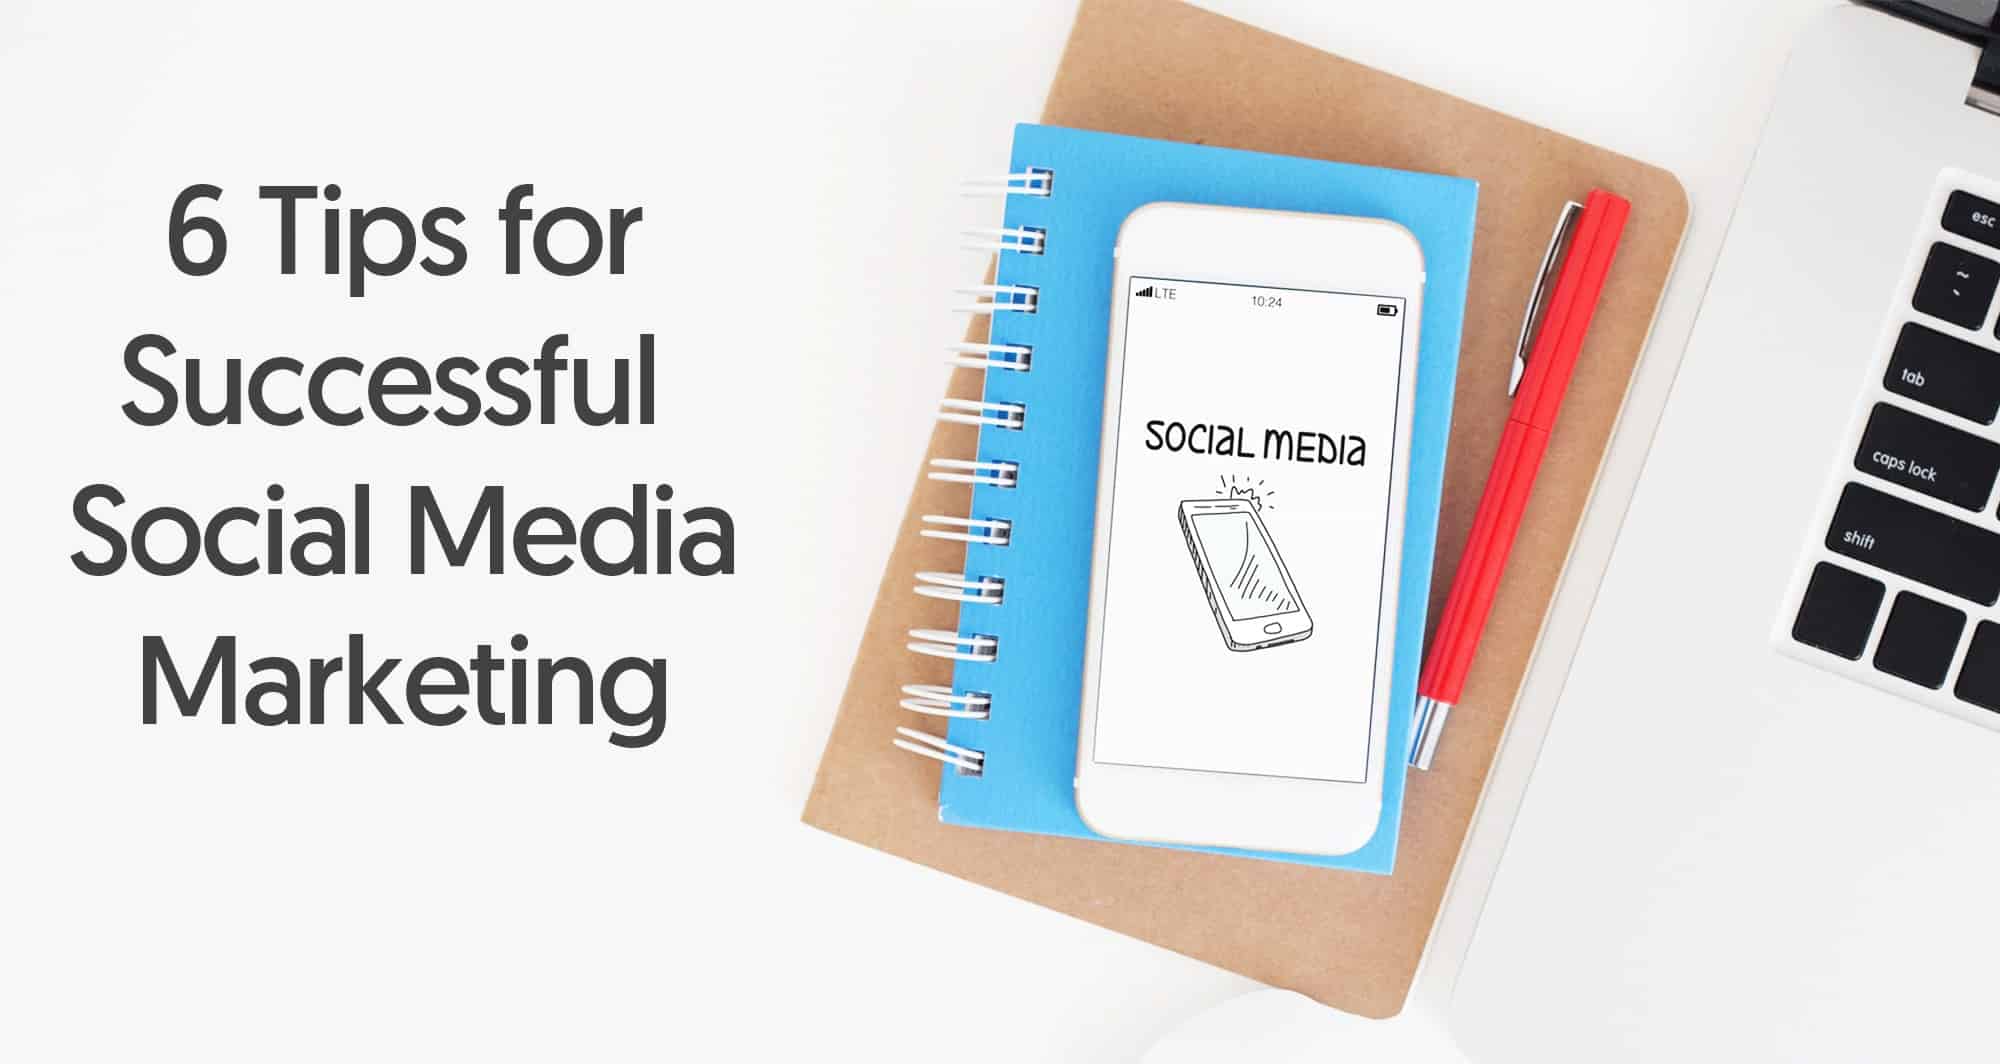 Successful Social Media Marketing Tips